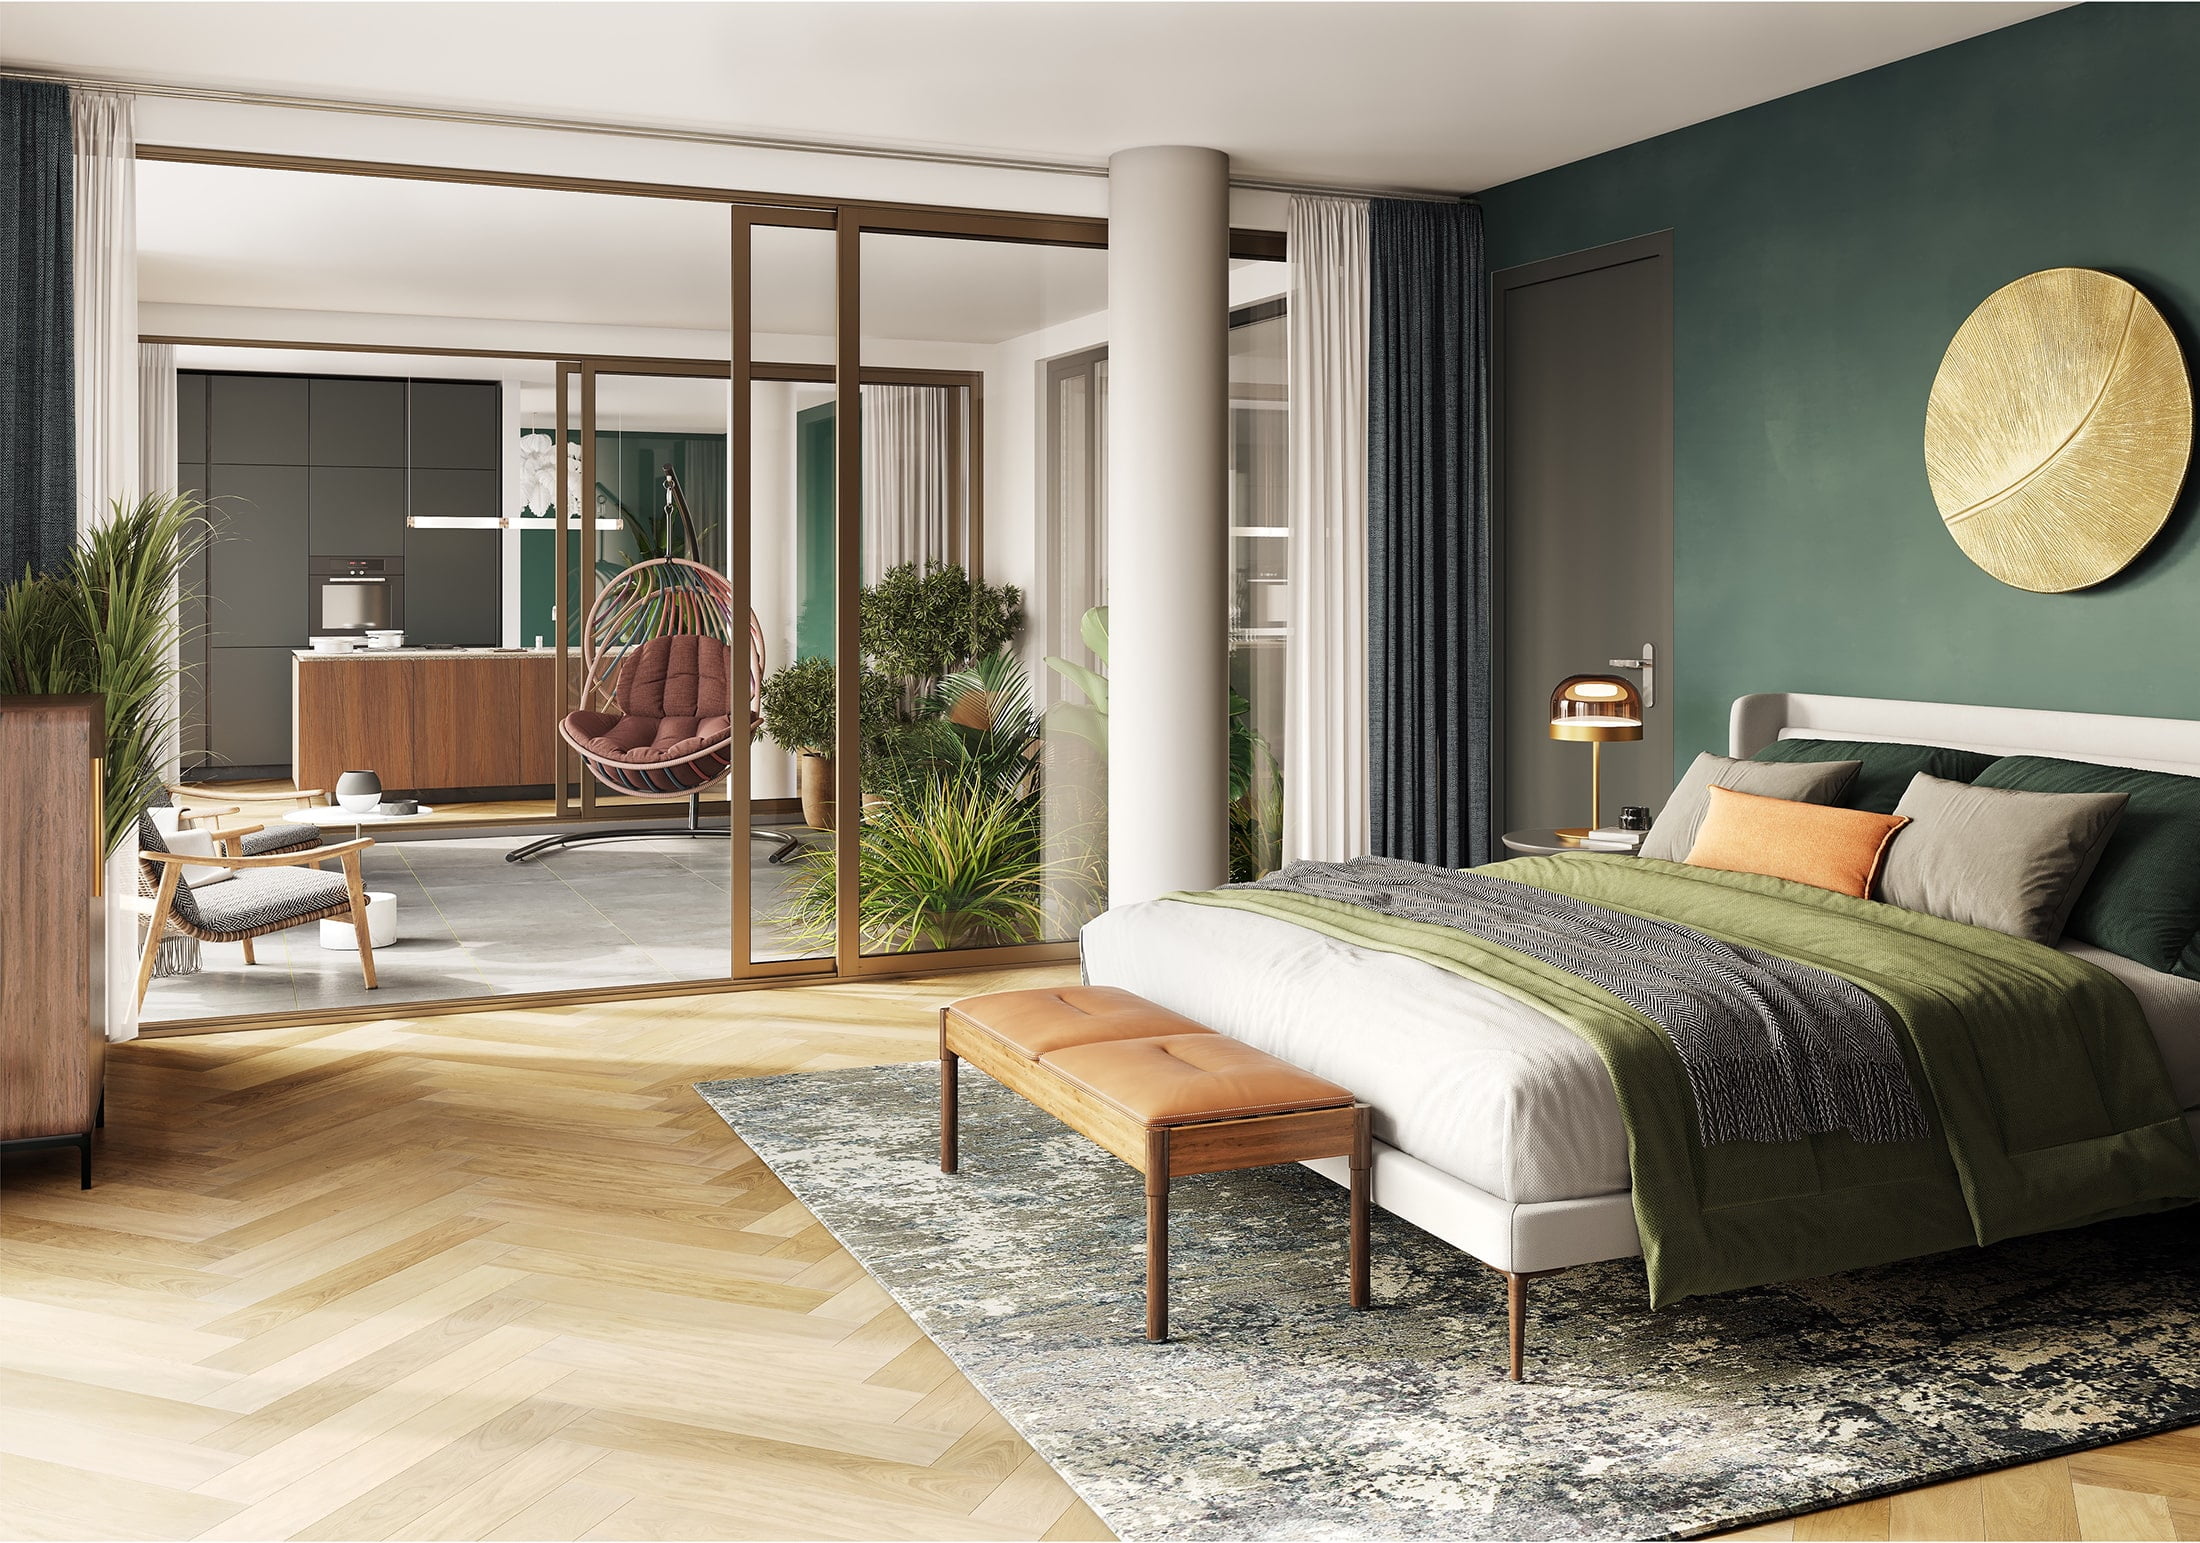 Interieurimpressies van een slaapkamer met groene muren en houten vloeren.